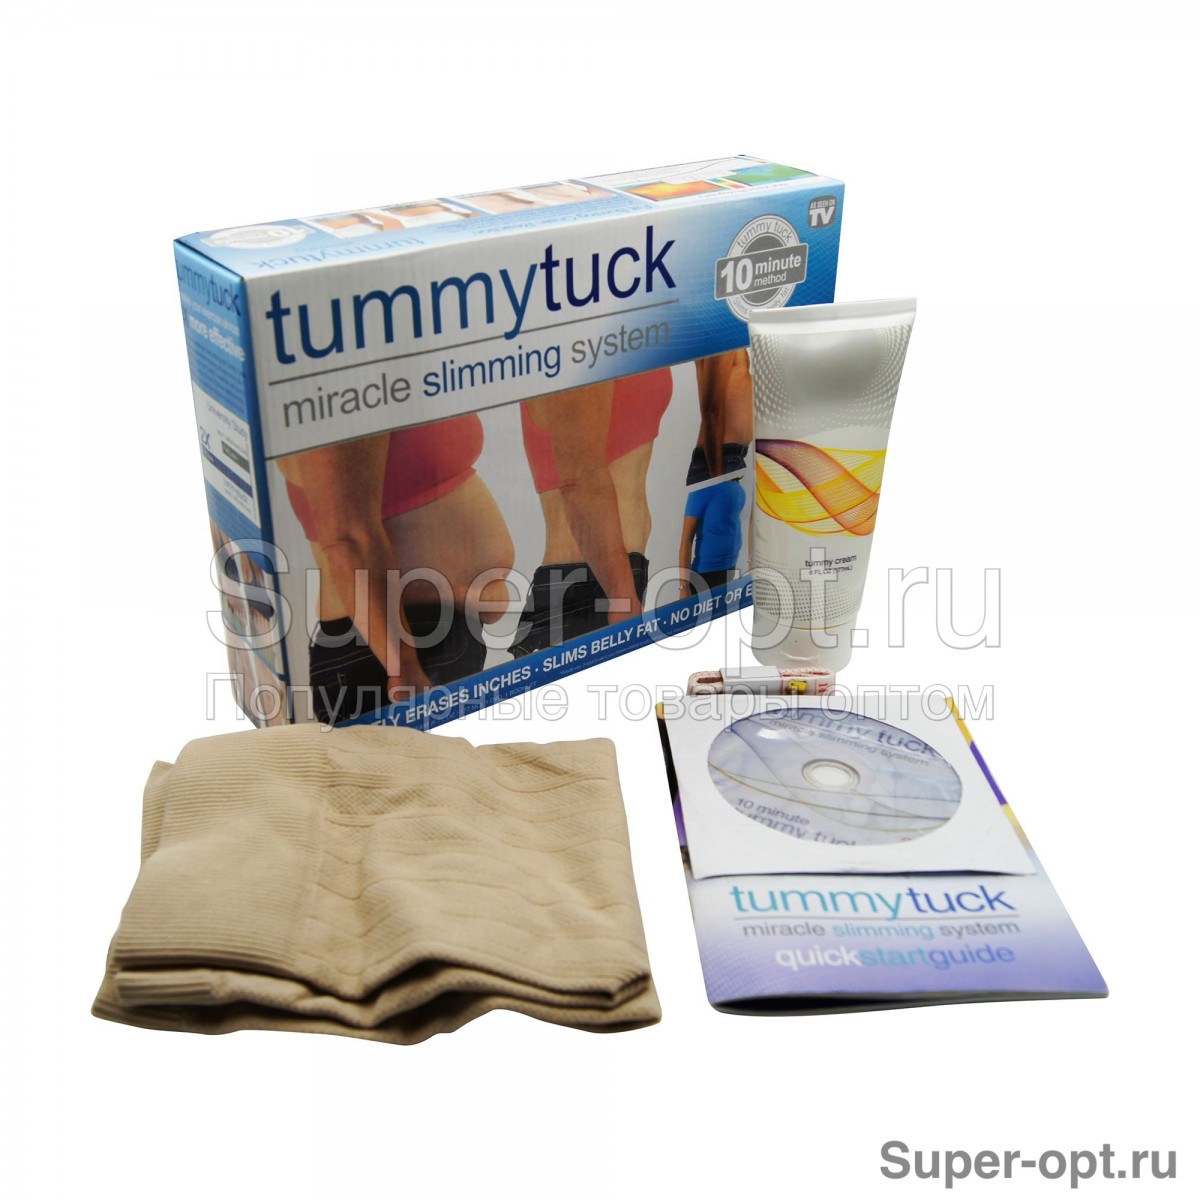 Моделирующий пояс+крем для похудения живота Tummytuck